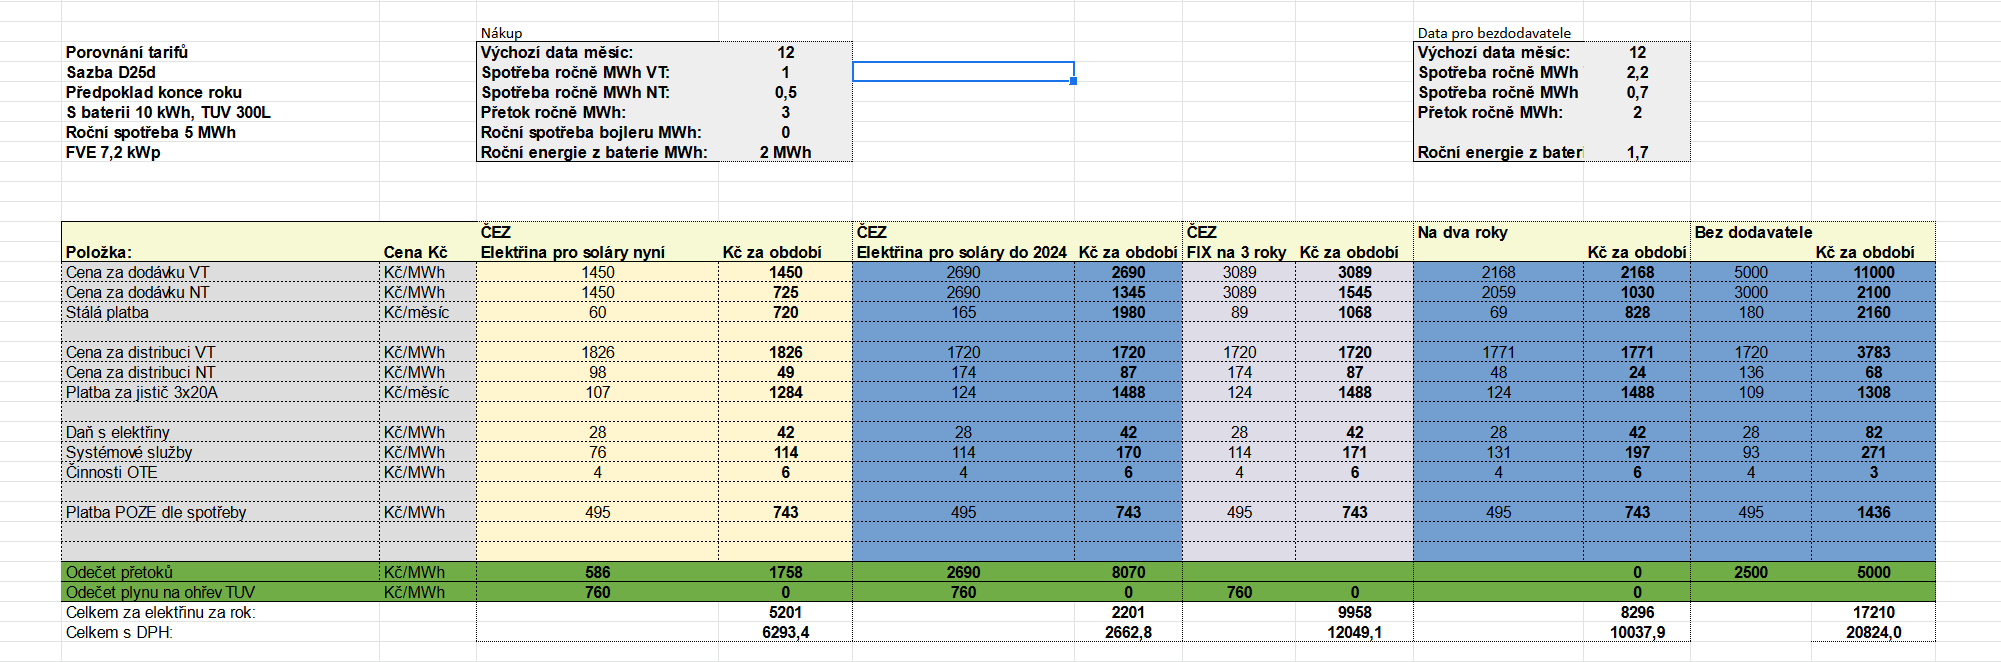 Screenshot 2021-12-31 at 09-46-53 Porovnání tarifů virtuální baterie od ČEZu a ostatních xlsx.png